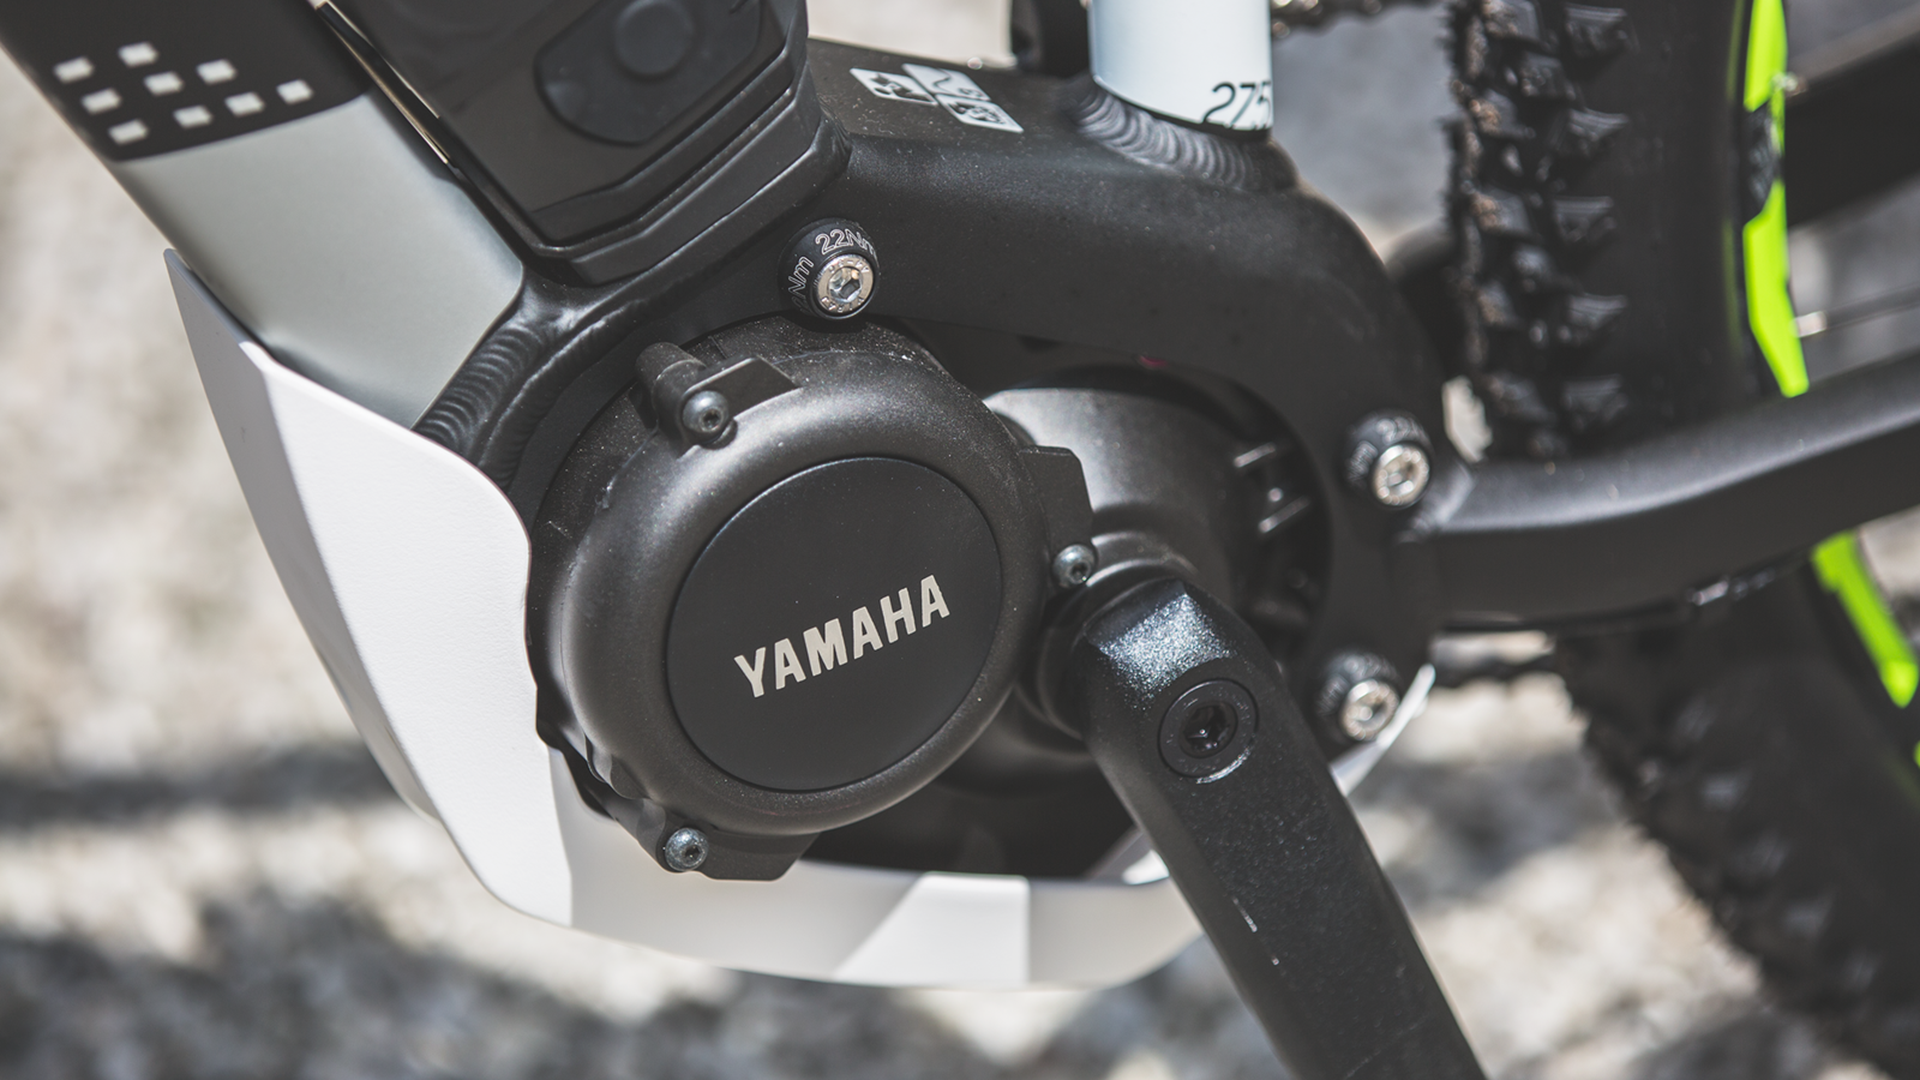 Haibike Yamaha FAQ Header Image